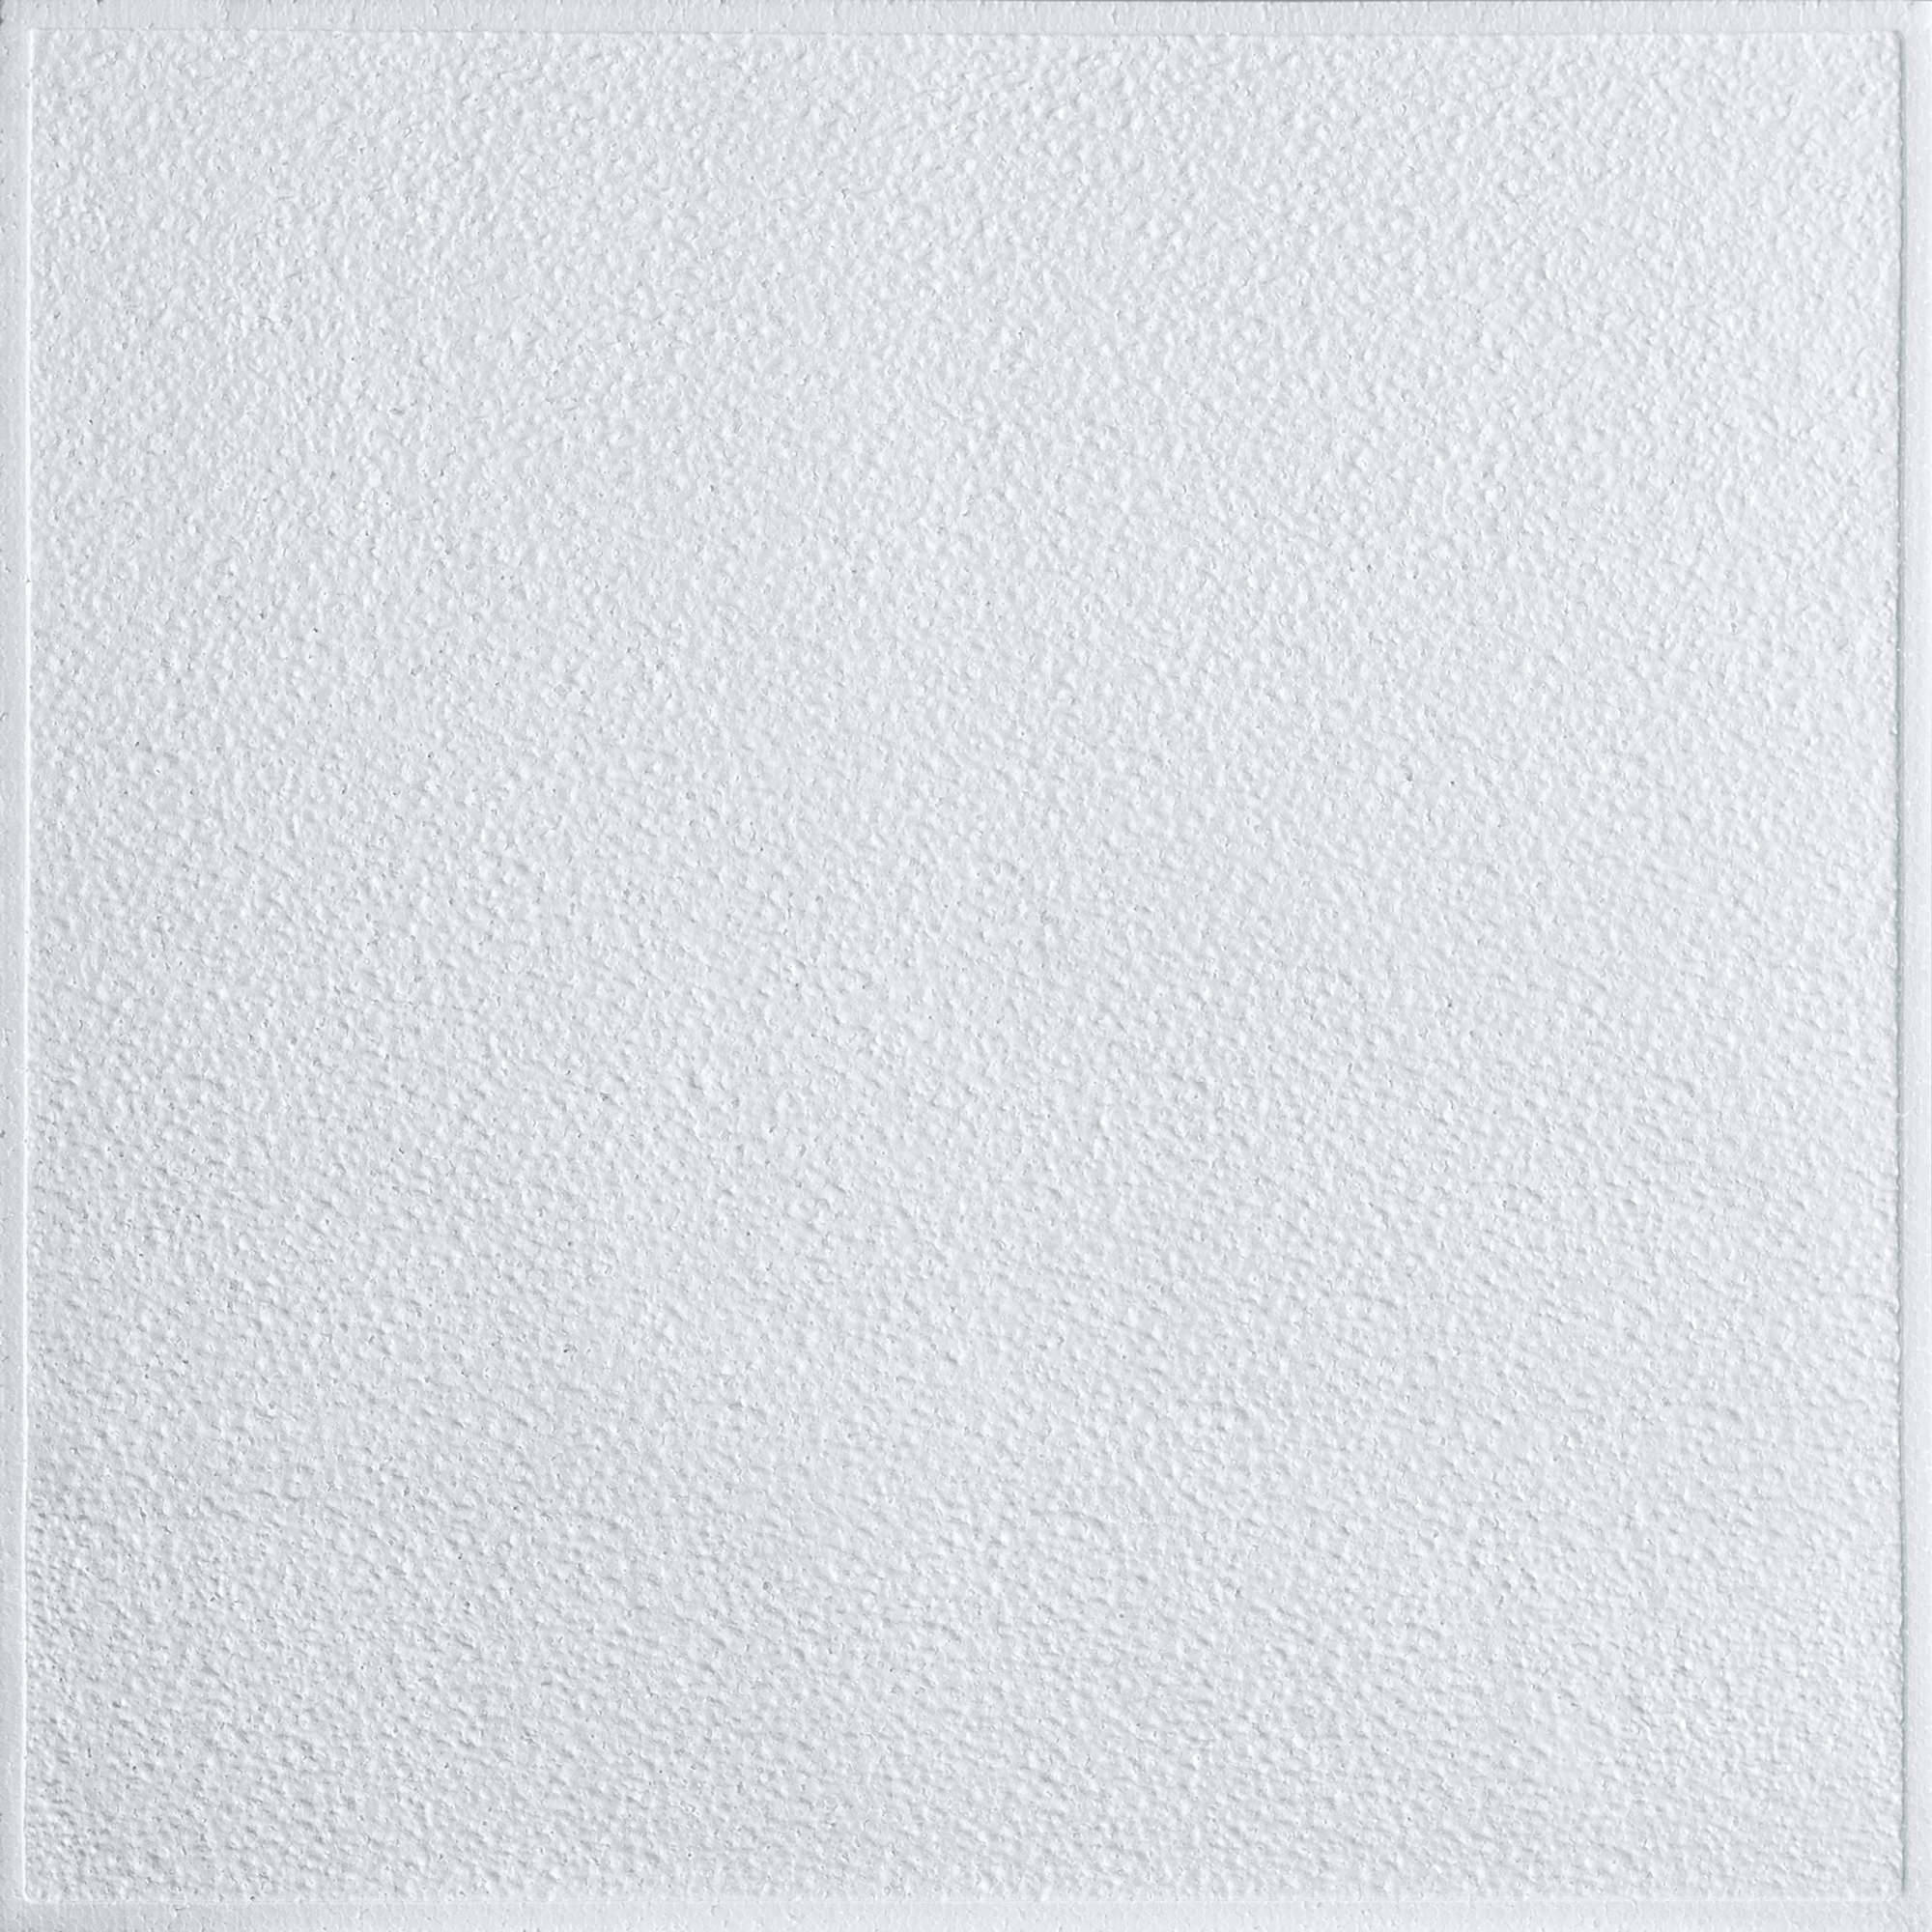 88404788 Плитка потолочная штампованная полистирол белая 510 50 x 50 см 2 м² STLM-0077690 FORMAT